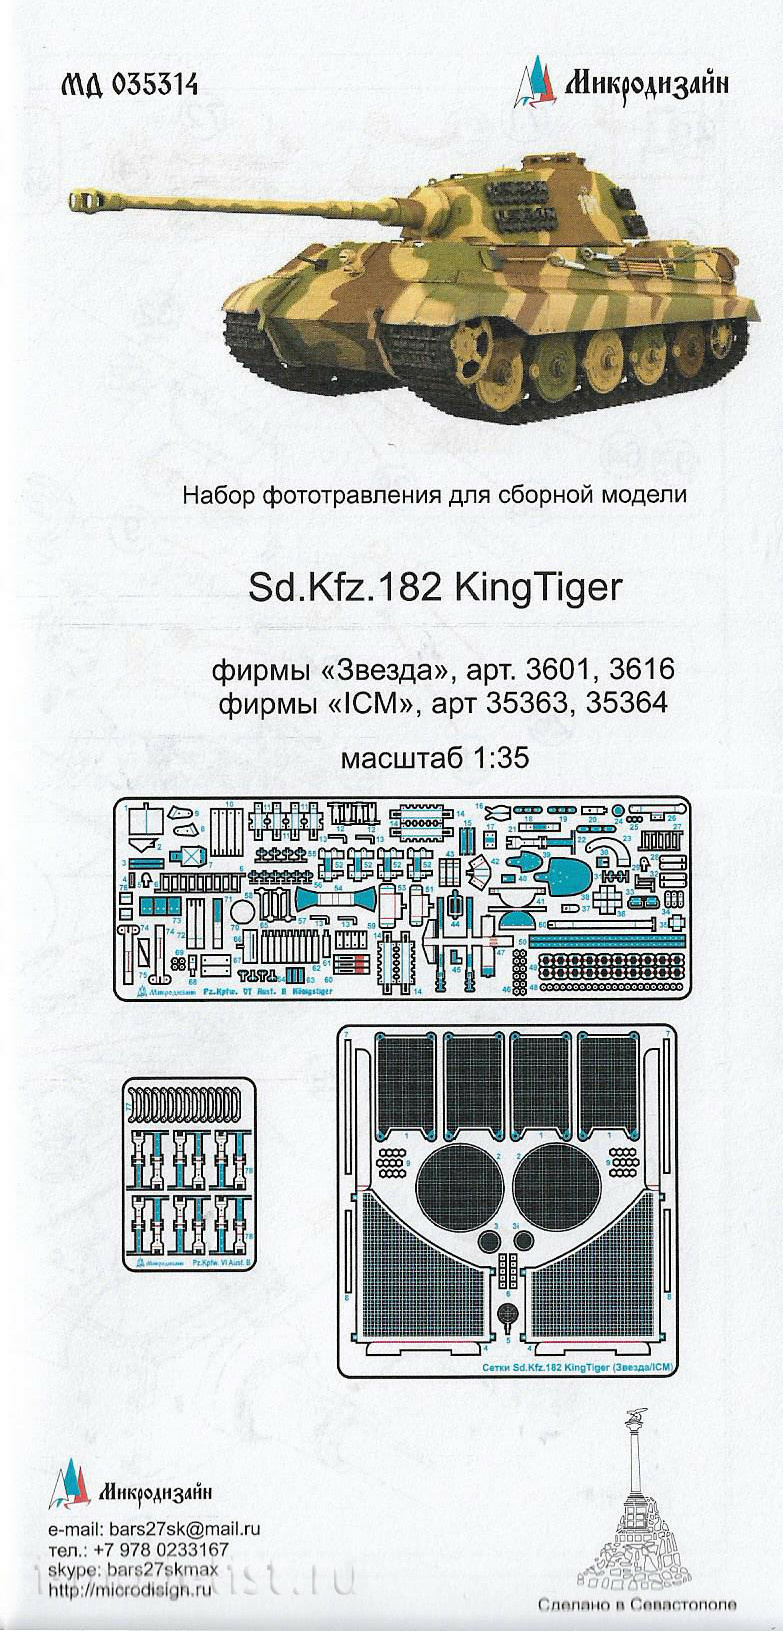 035314 Microdesign 1/35 SD.KFZ.182 king TIGER (Zvezda/ICM)